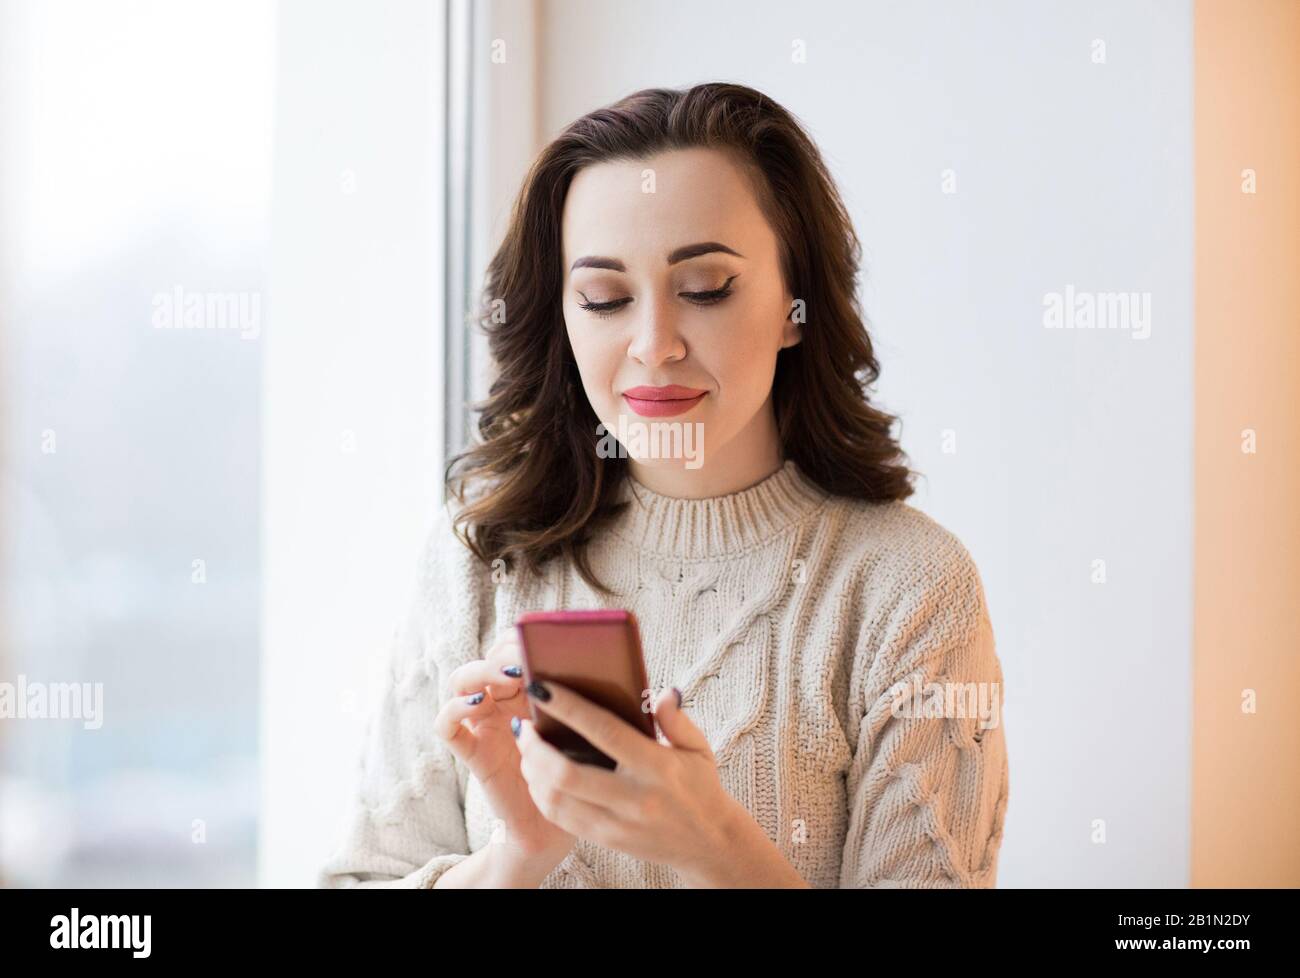 Femme dans un pull décontracté tricoté avec une manucure noire élégante à l'aide d'un téléphone mobile de vérification de message ou de navigation sur Internet Banque D'Images